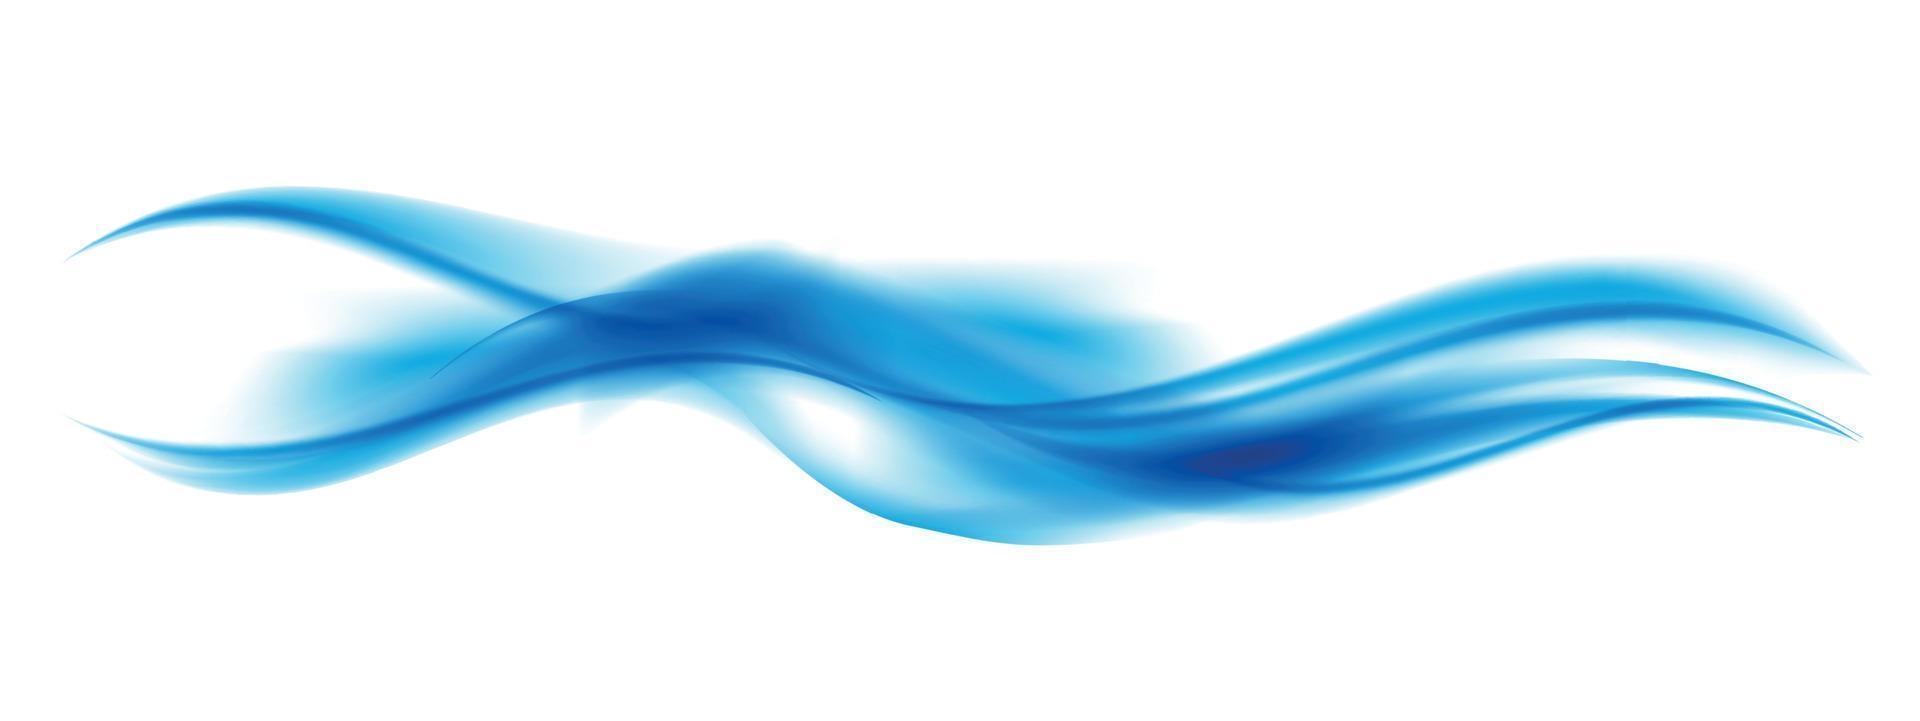 onda azul abstracta en el fondo. ilustración vectorial vector